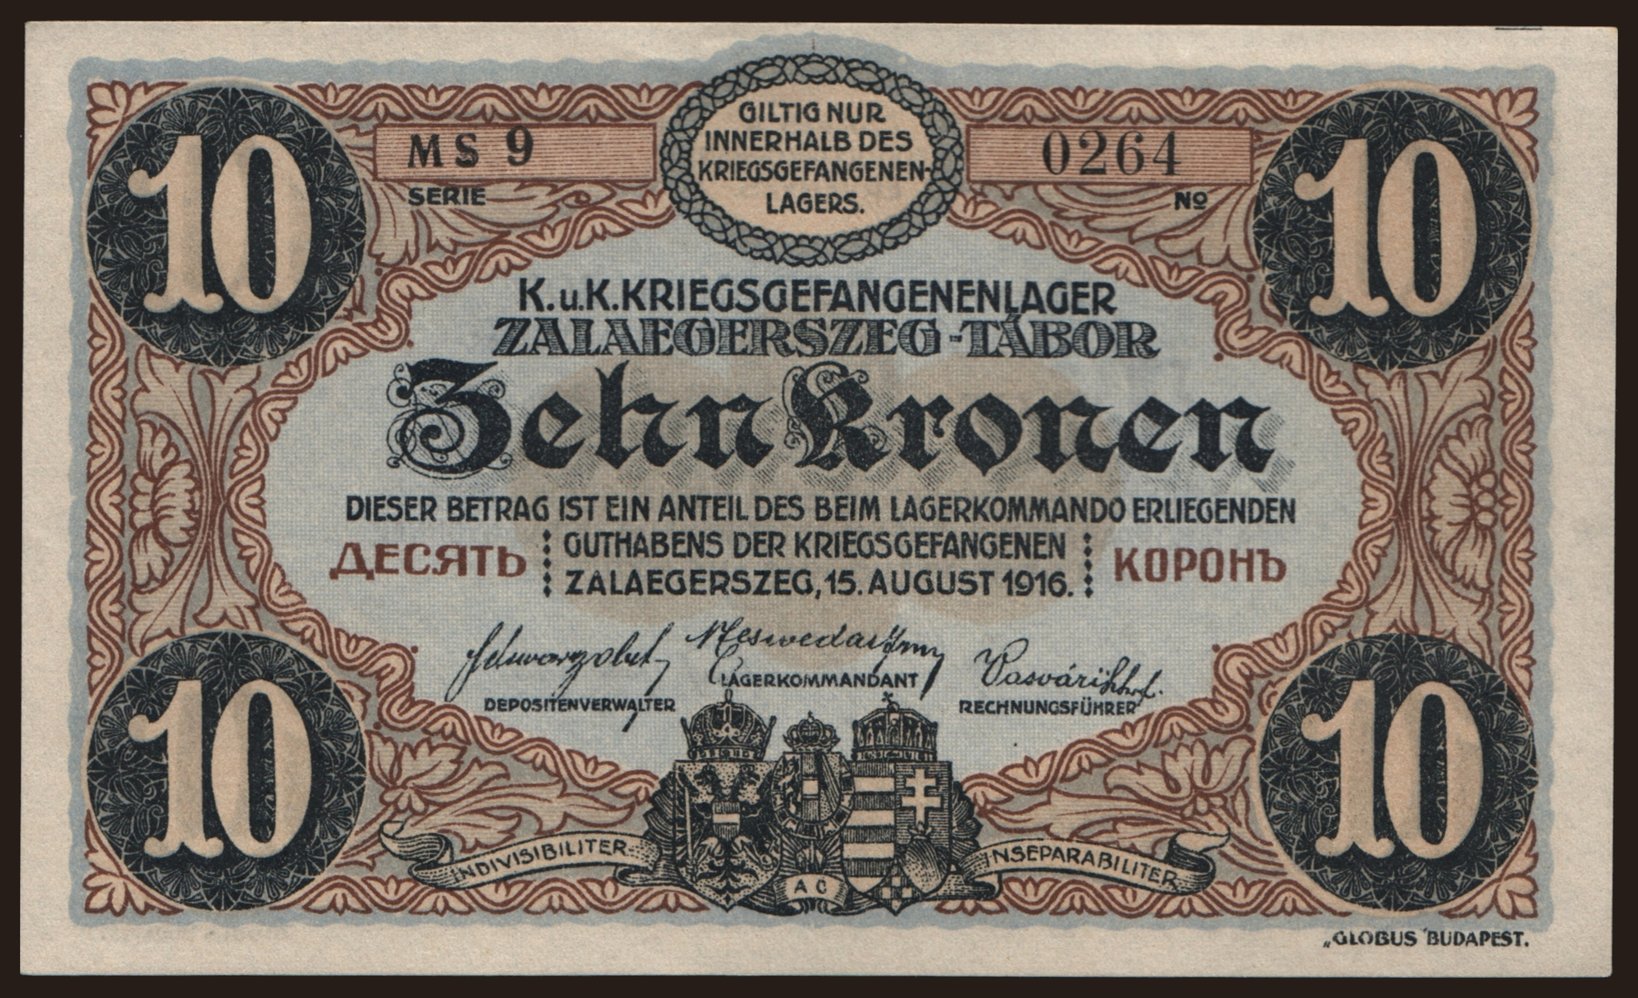 Zalaegerszeg, 10 Kronen, 1916